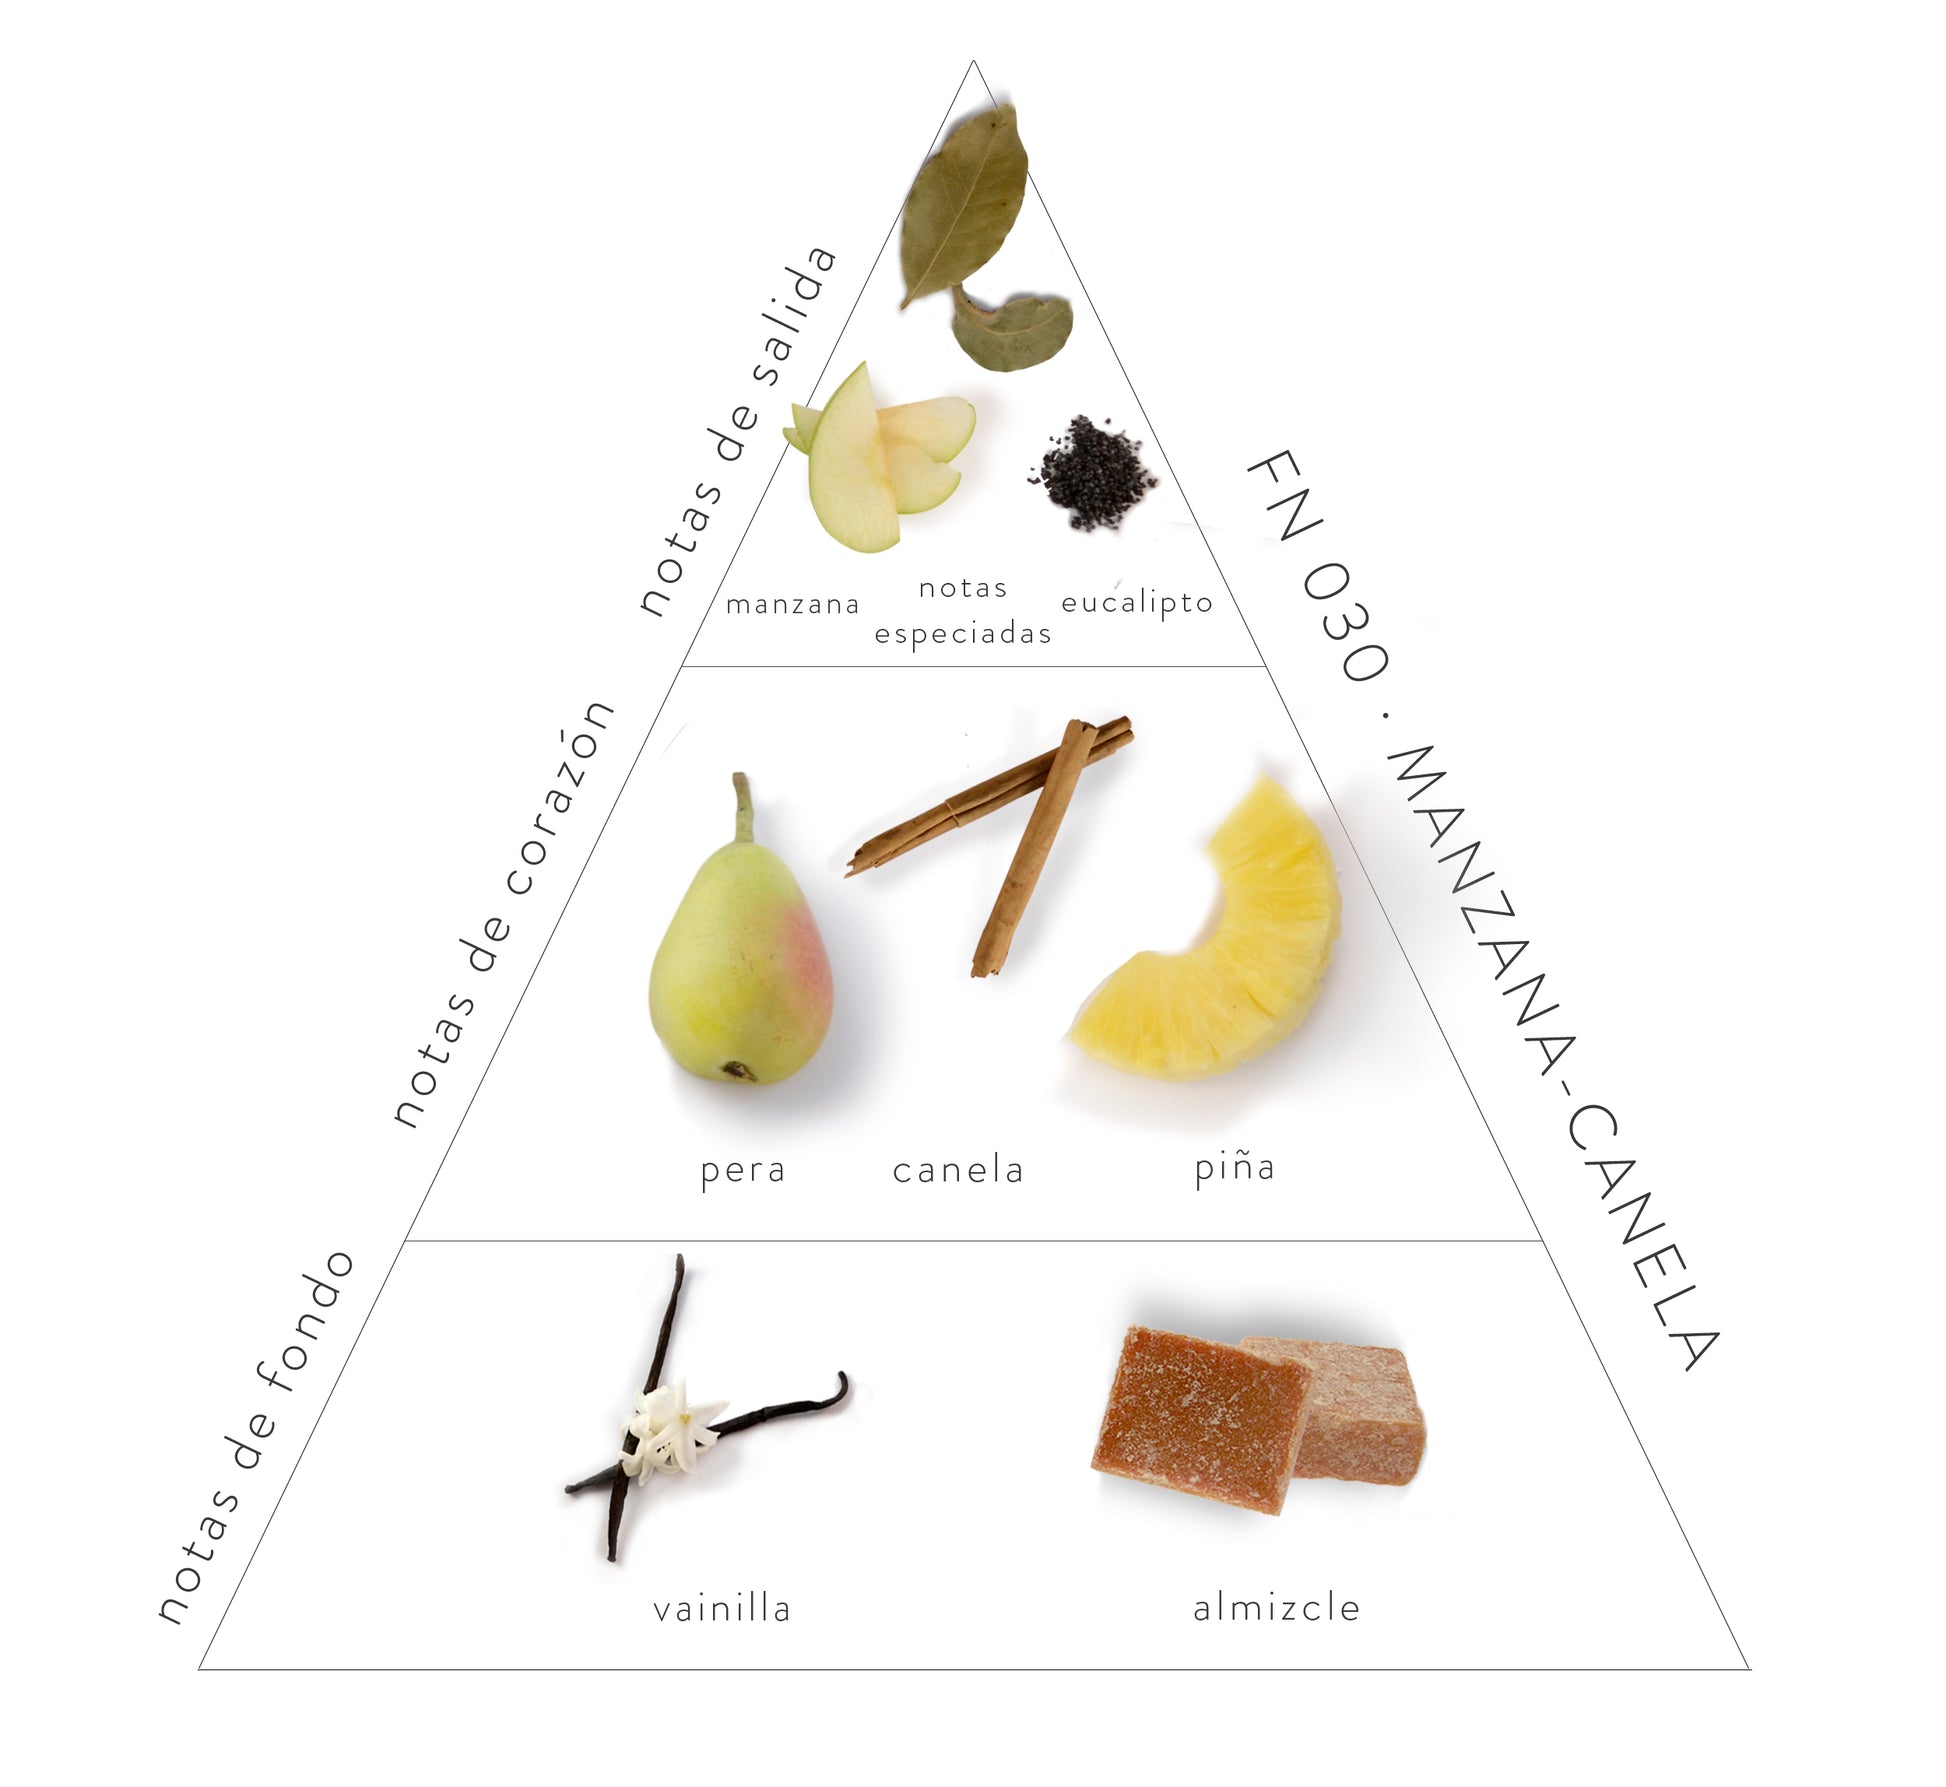 Pirámide Olfativa Manzana-Canela: Notas de salida: manzana, notas especiadas y eucalipto. Notas de corazón: pera, canela y piña. Notas de fondo: vainilla y almizcle.